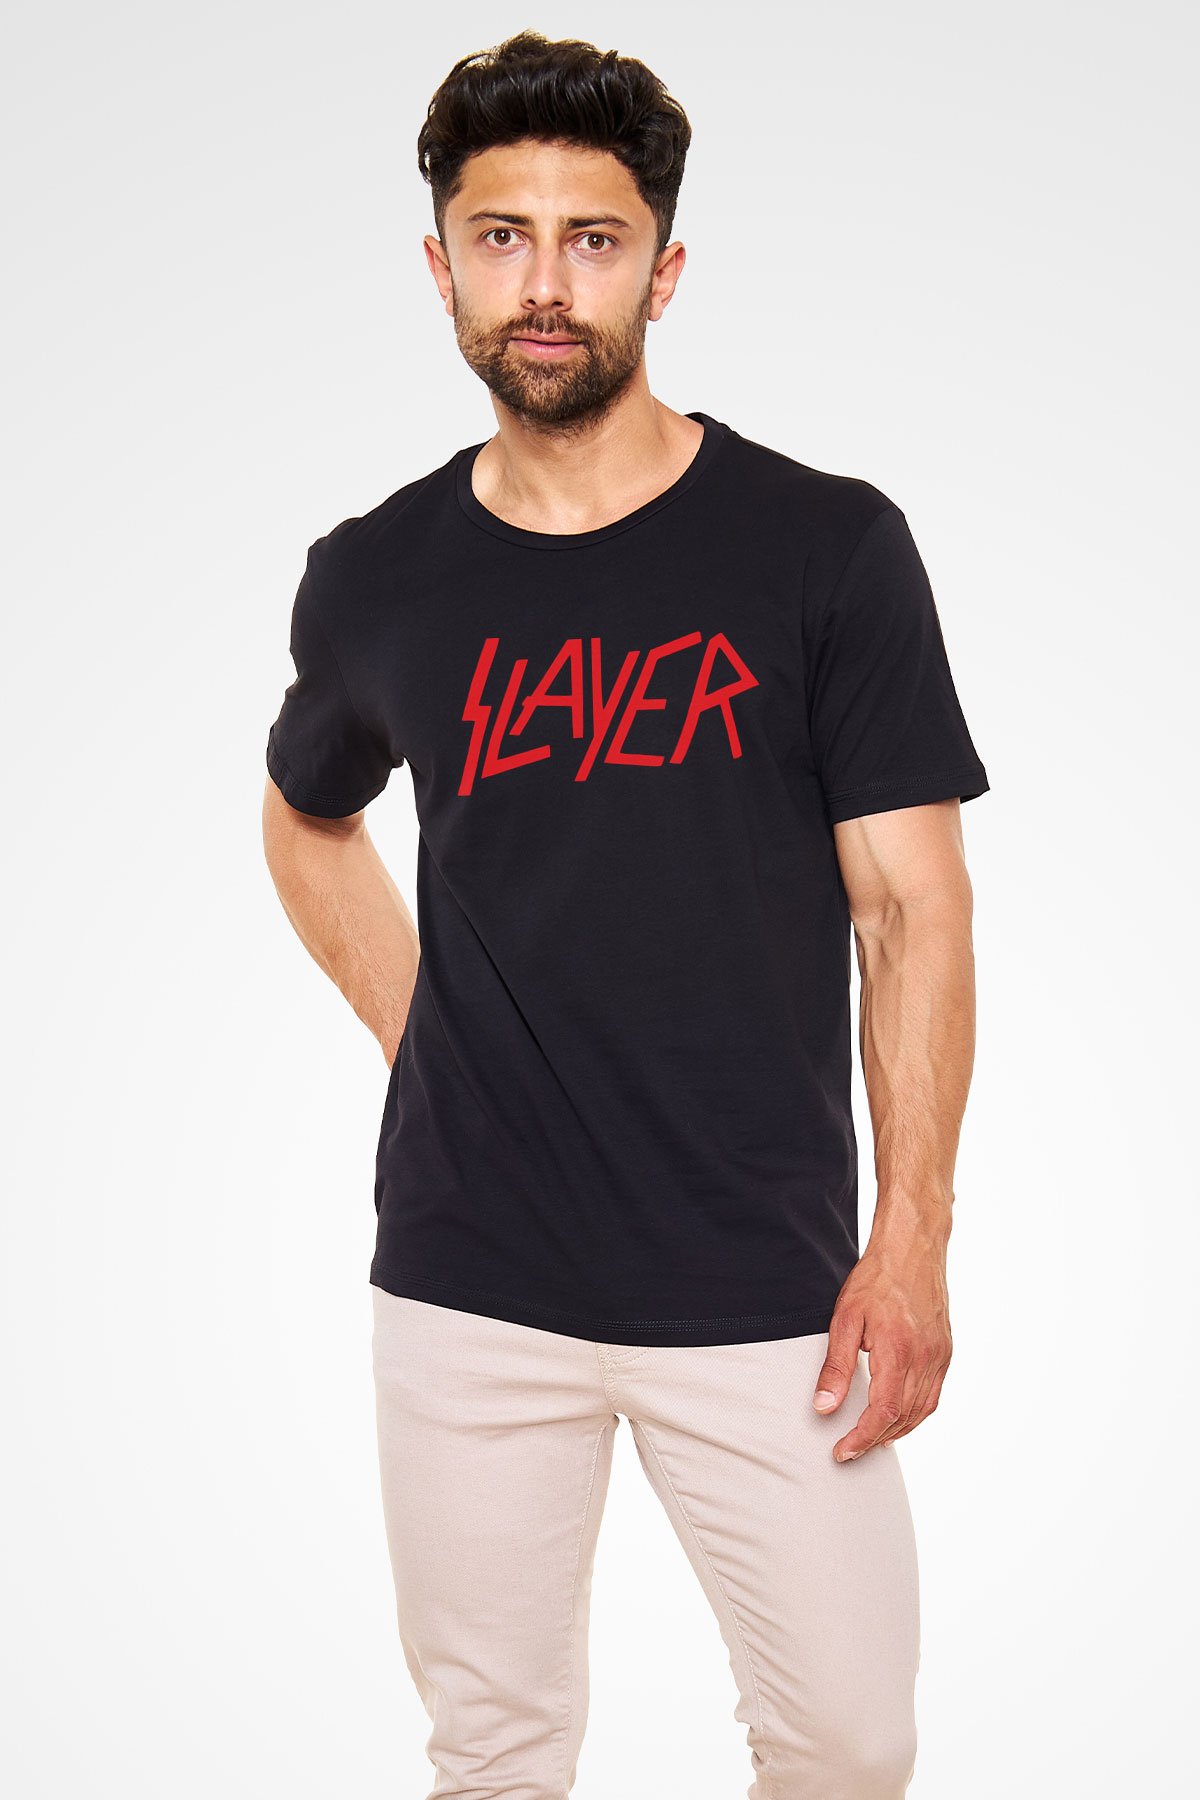 Slayer Beyaz Unisex Tişört T-Shirt - Tişört Fabrikası